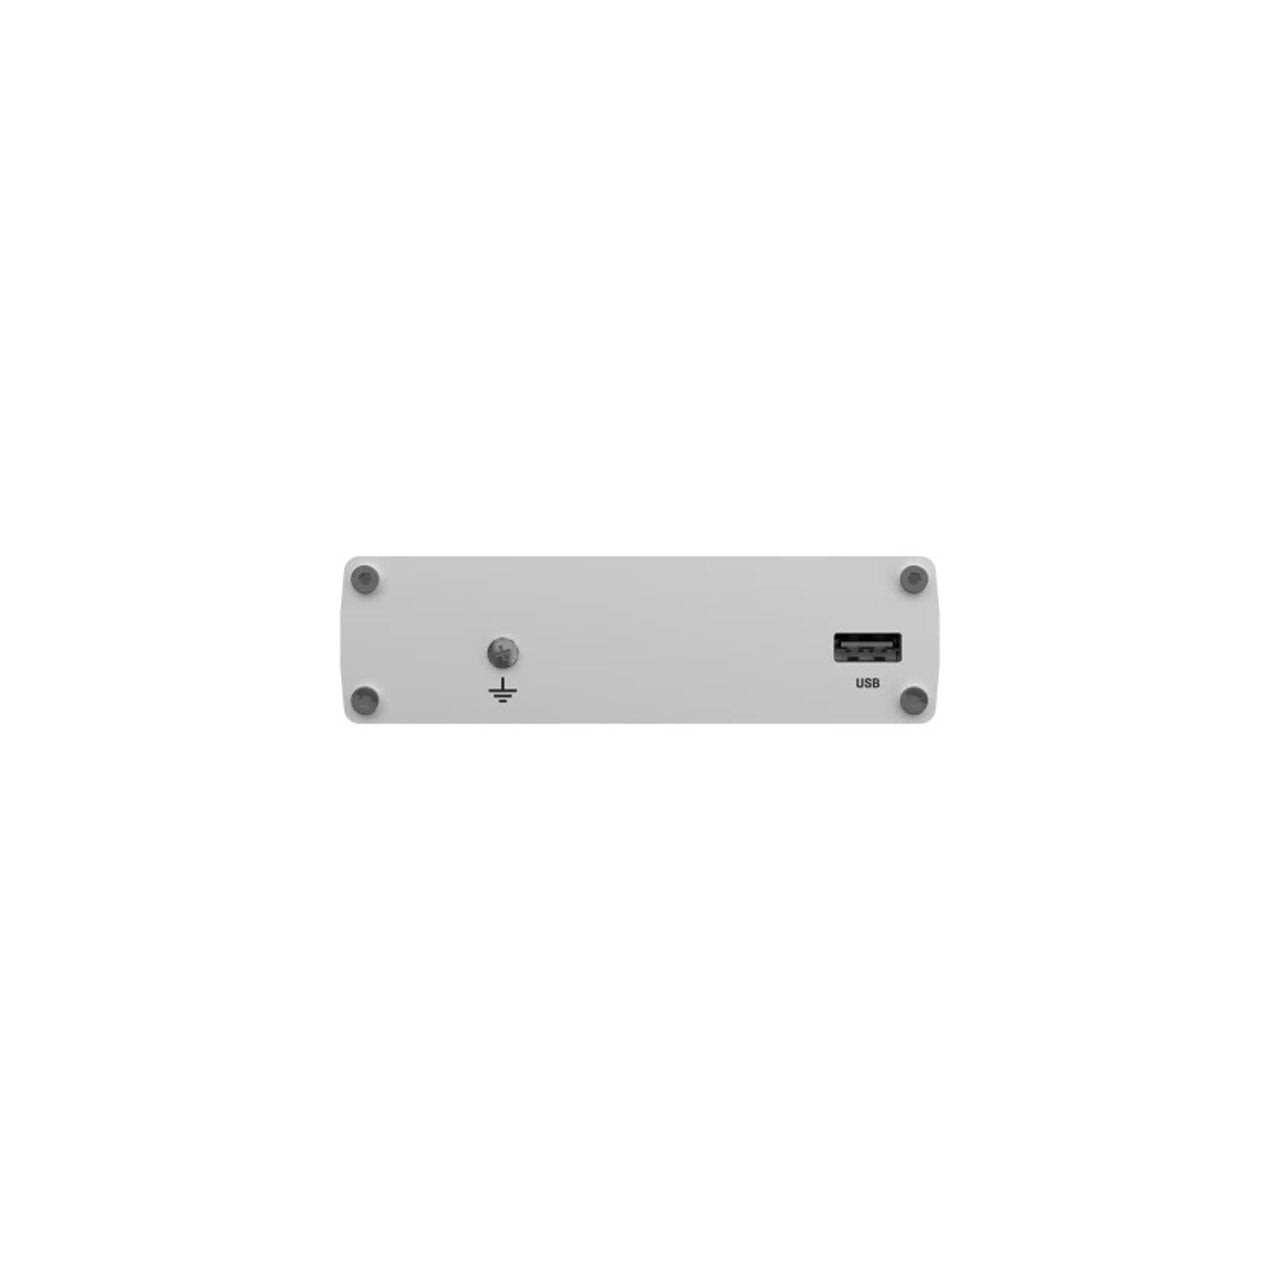 4 WAN/LAN (10/100/1000), 2 I/O, USB